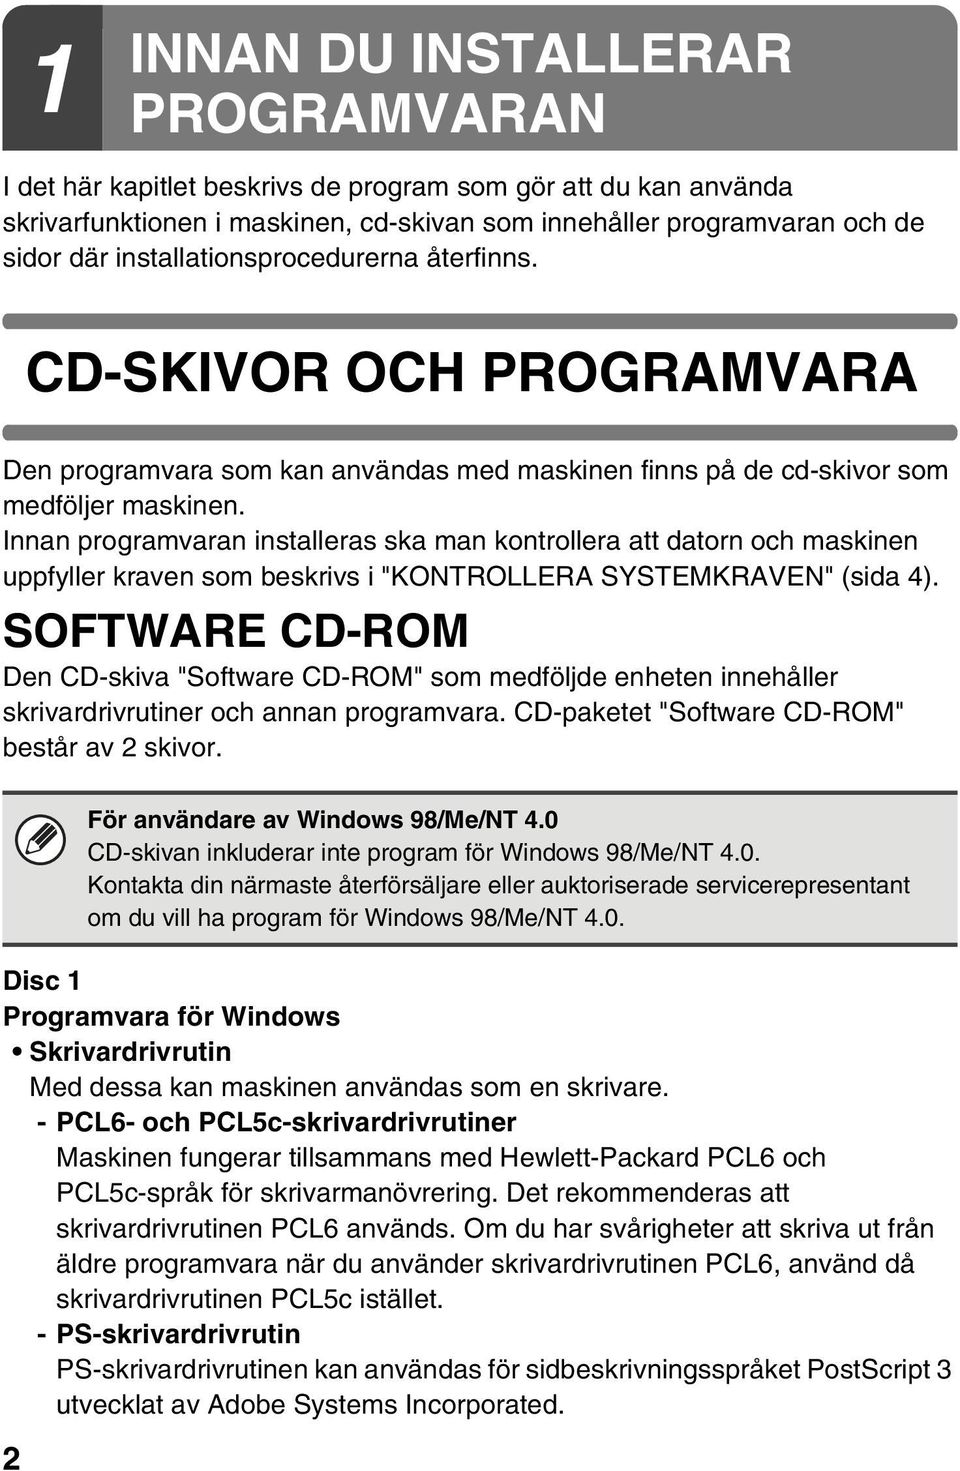 Innan programvaran installeras ska man kontrollera att datorn och maskinen uppfyller kraven som beskrivs i "KONTROLLERA SYSTEMKRAVEN" (sida 4).